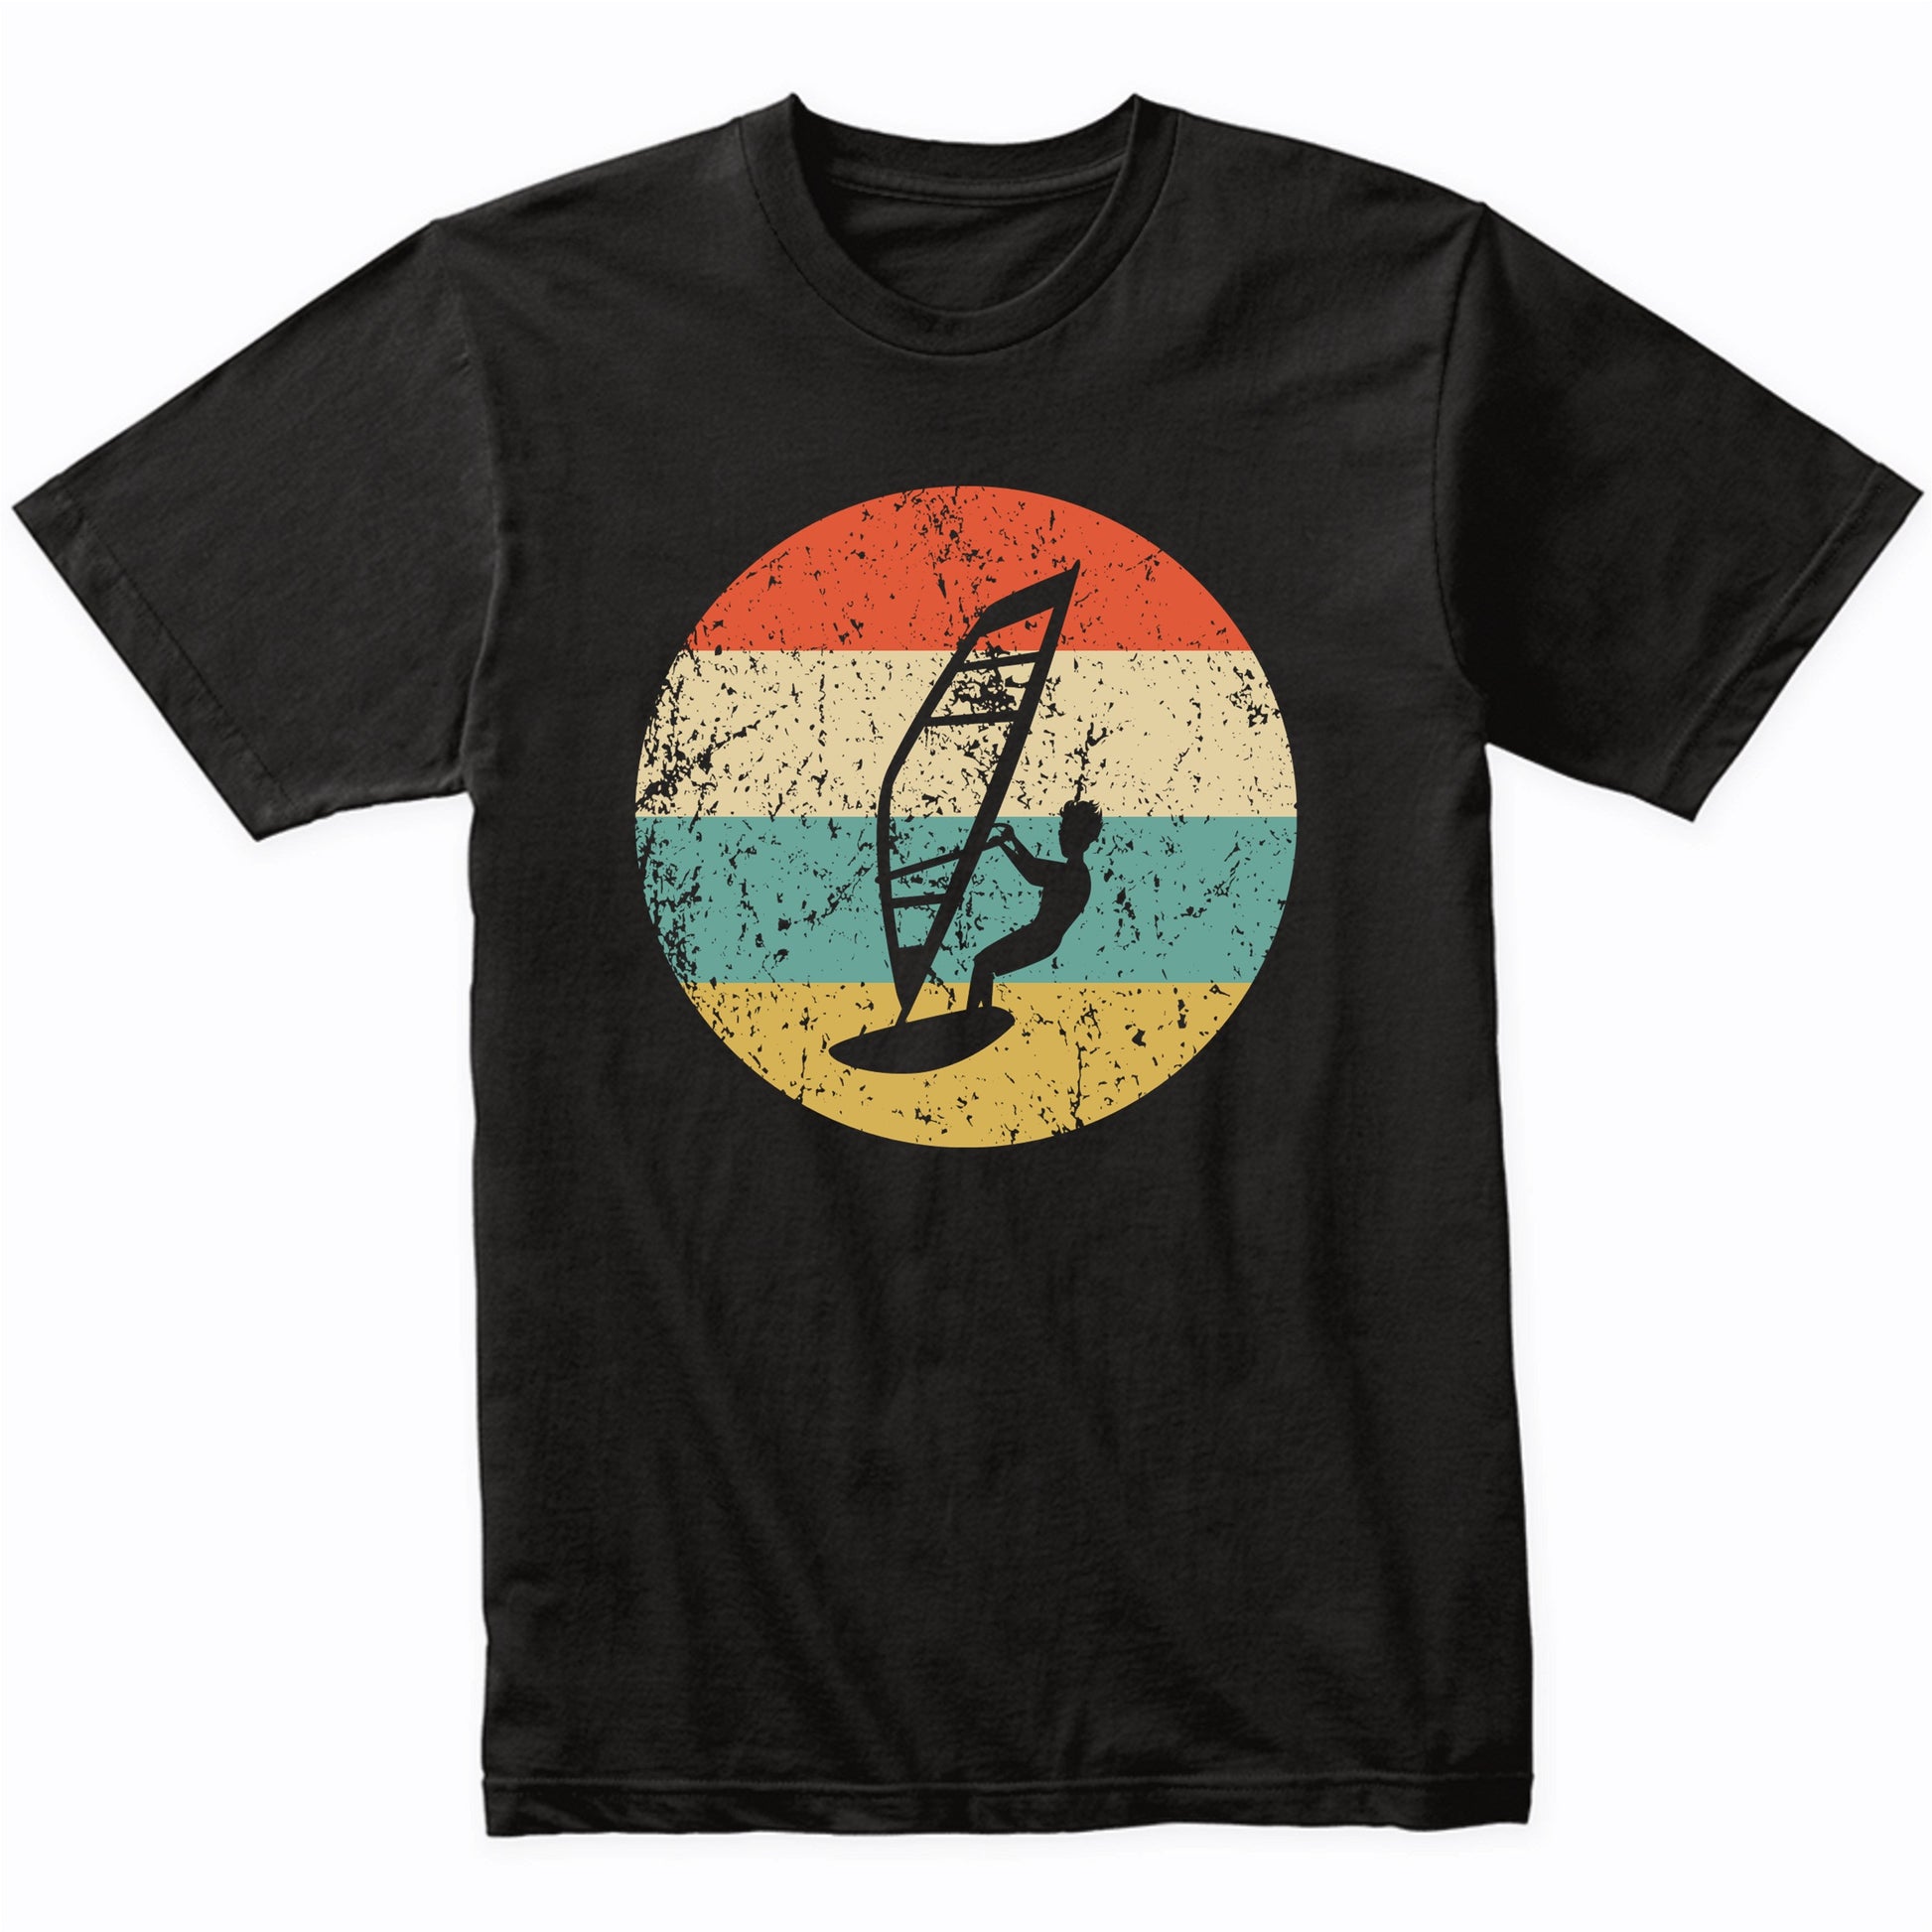 Windsurfing Shirt - Vintage Retro Windsurfer T-Shirt Men's Medium / Navy